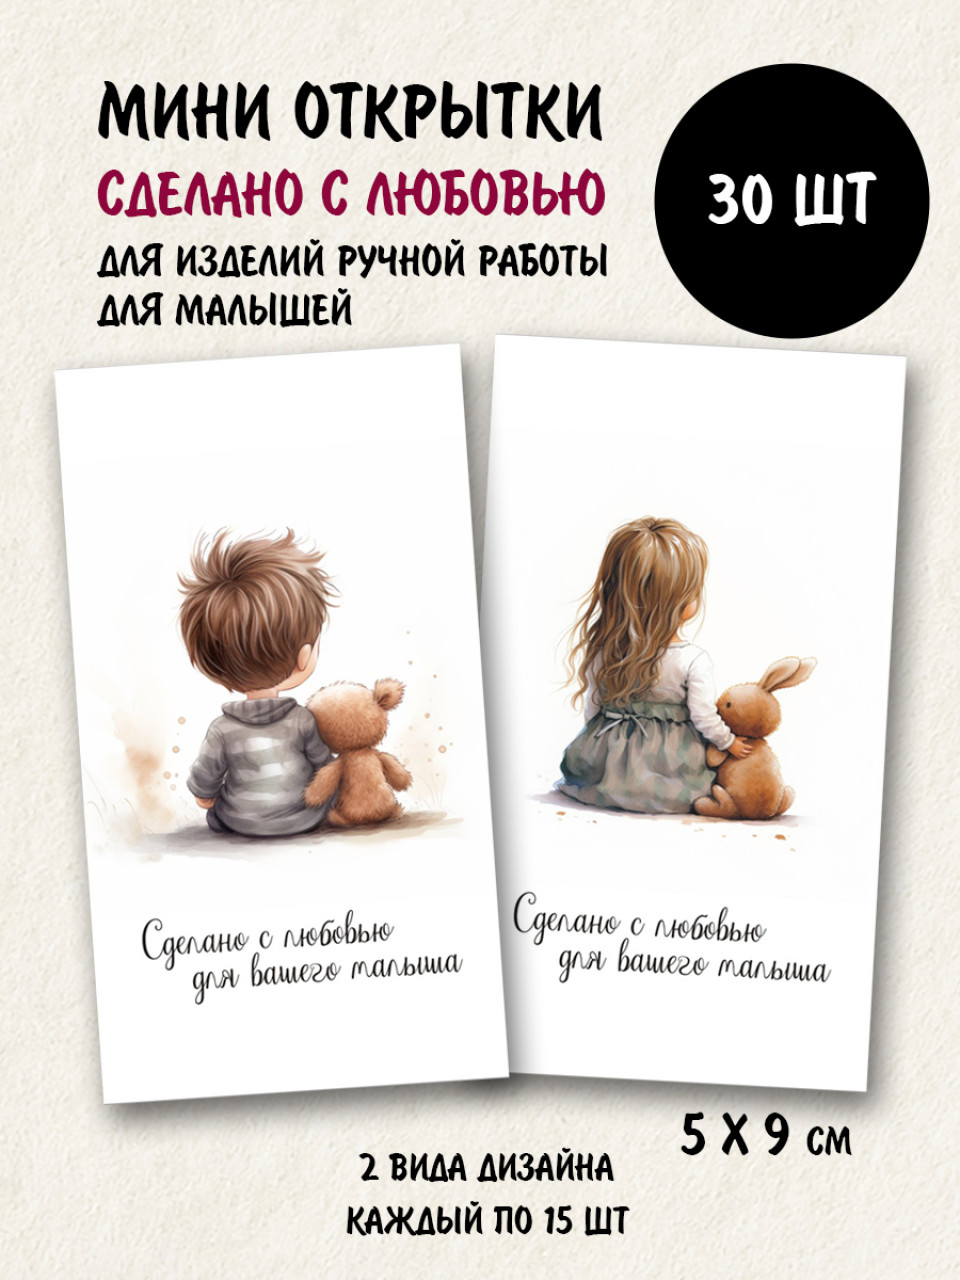 Мини открытки Сделано с любовью для вашего малыша, набор 30 шт 50х90 мм - фото